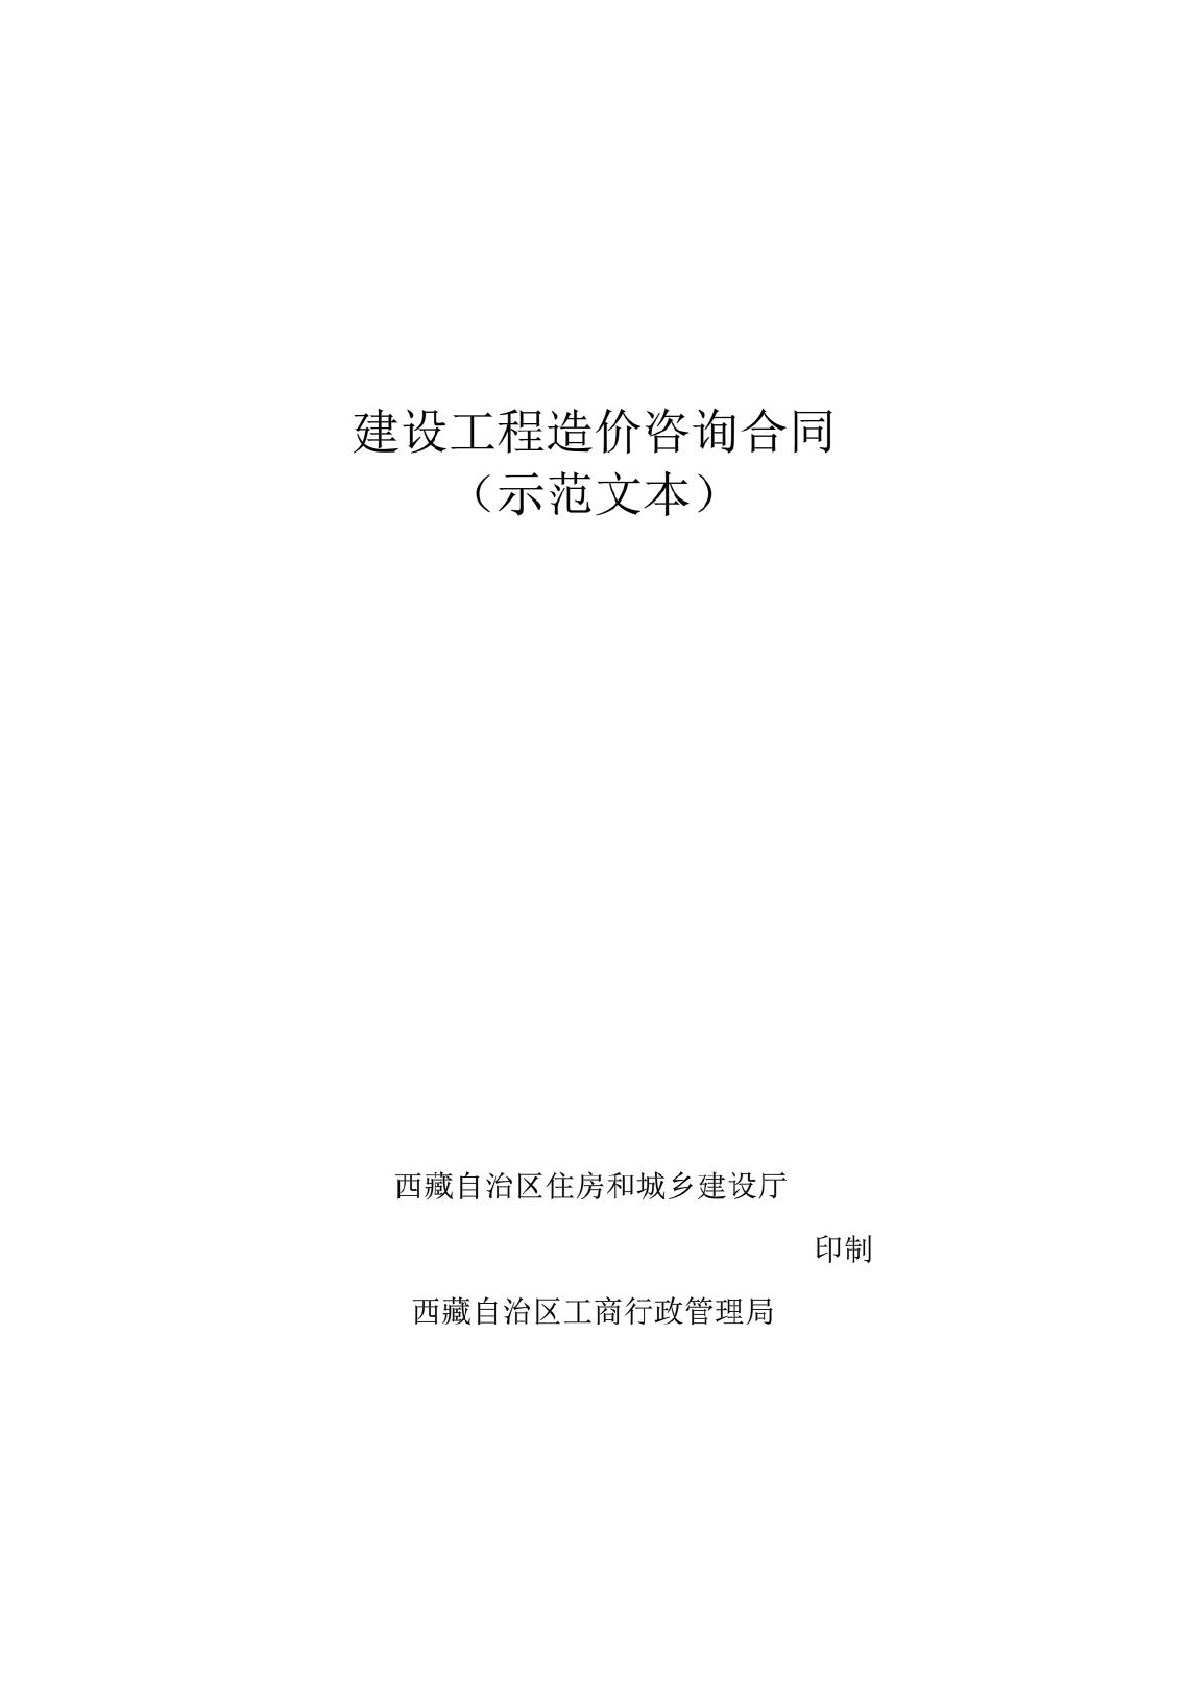 西藏自治区建设工程造价咨询合同(示范文本)